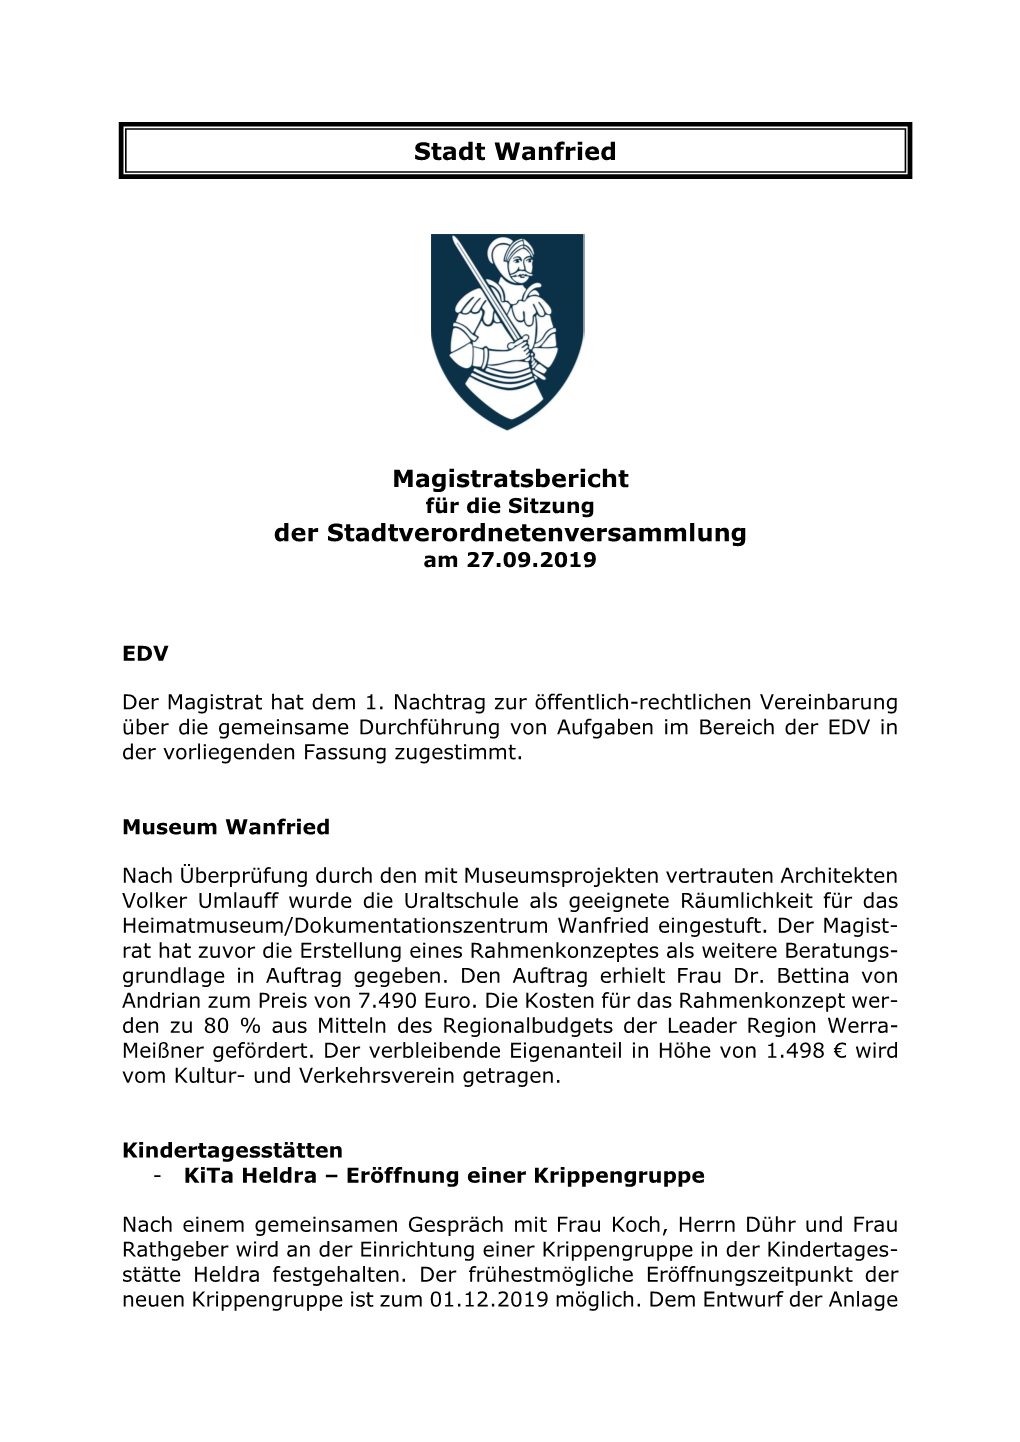 Magistratsbericht Für Die Sitzung Der Stadtverordnetenversammlung Am 27.09.2019